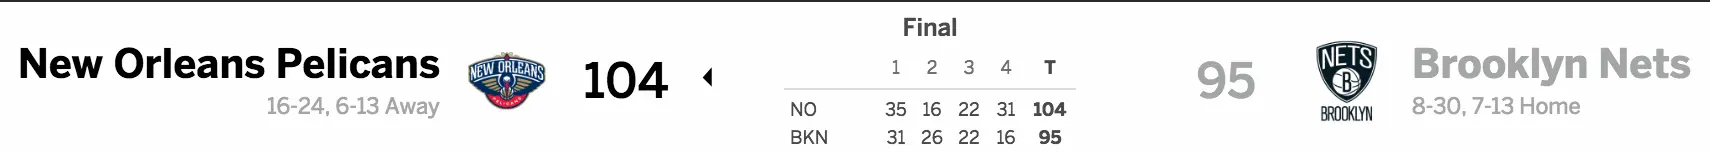 Brooklyn Nets vs. New Orleans Pelicans 01/12/17 Score